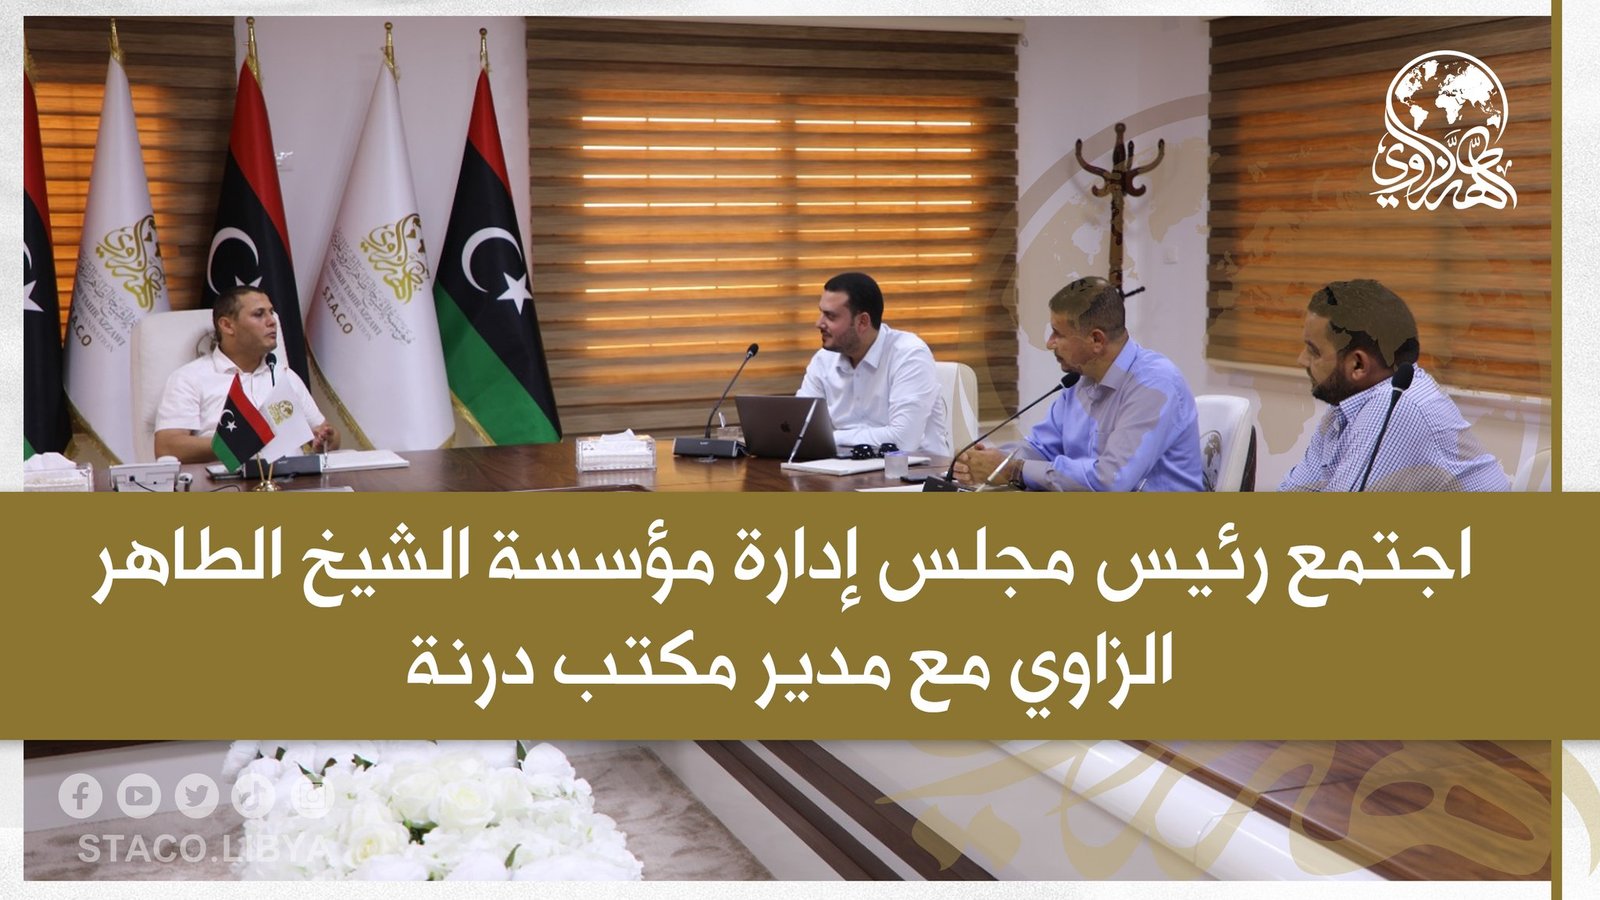 اجتمع رئيس مجلس إدارة مؤسسة الشيخ الطاهر الزاوي مع مدير مكتب درنة